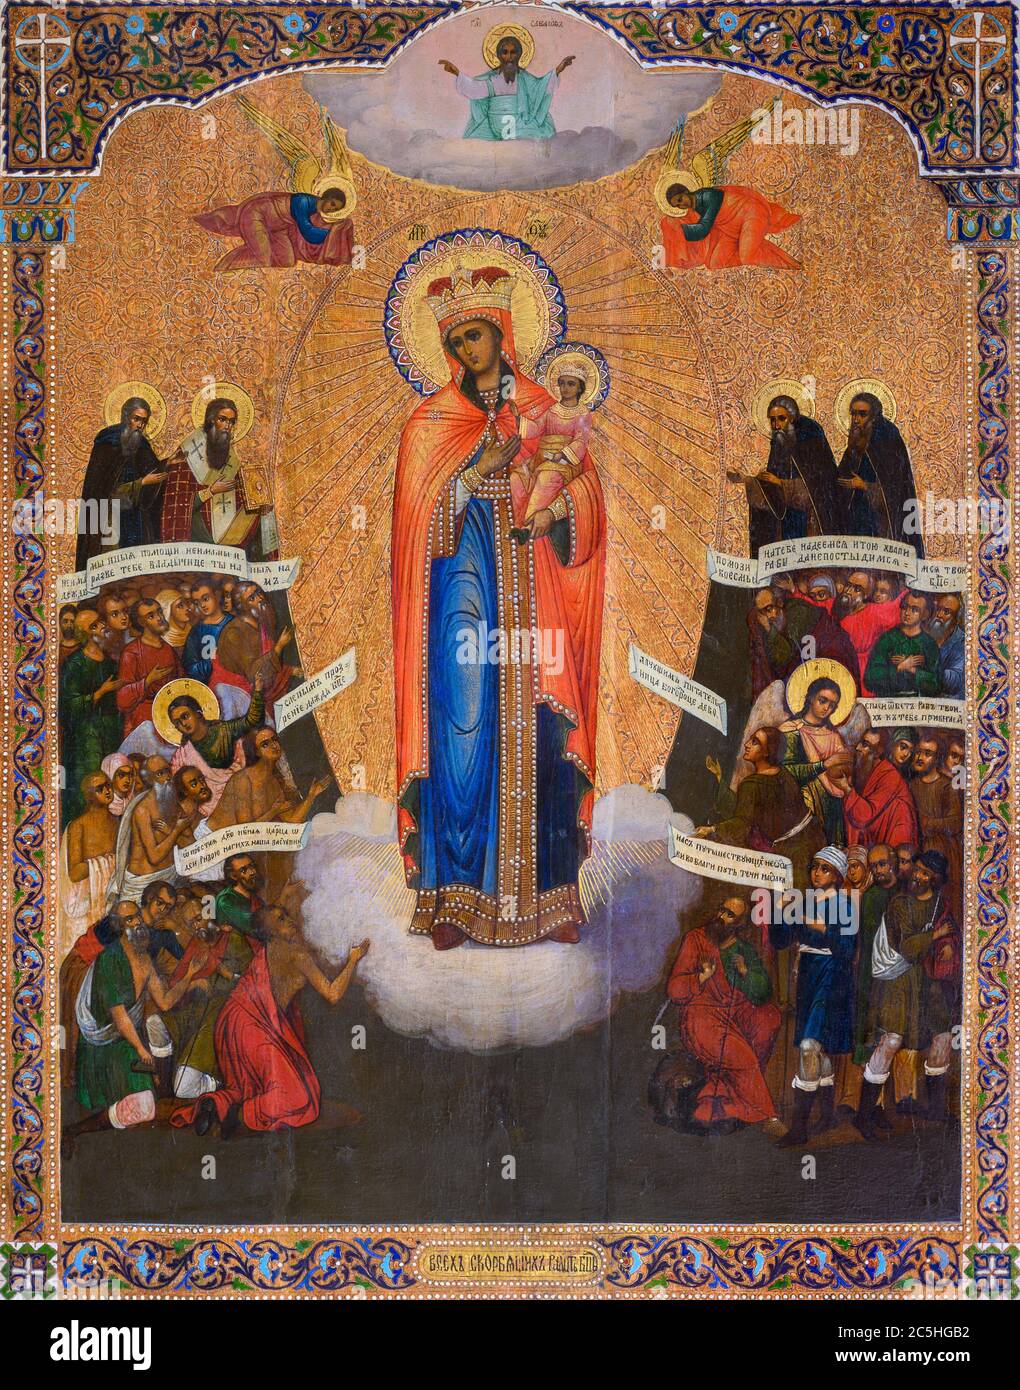 Die Ikone „Tröster der Leidenden“, die die Gottesmutter Maria zeigt und auf ihren Sohn, Jesuskind, verweist. Bratislava, Slowakei. Stockfoto